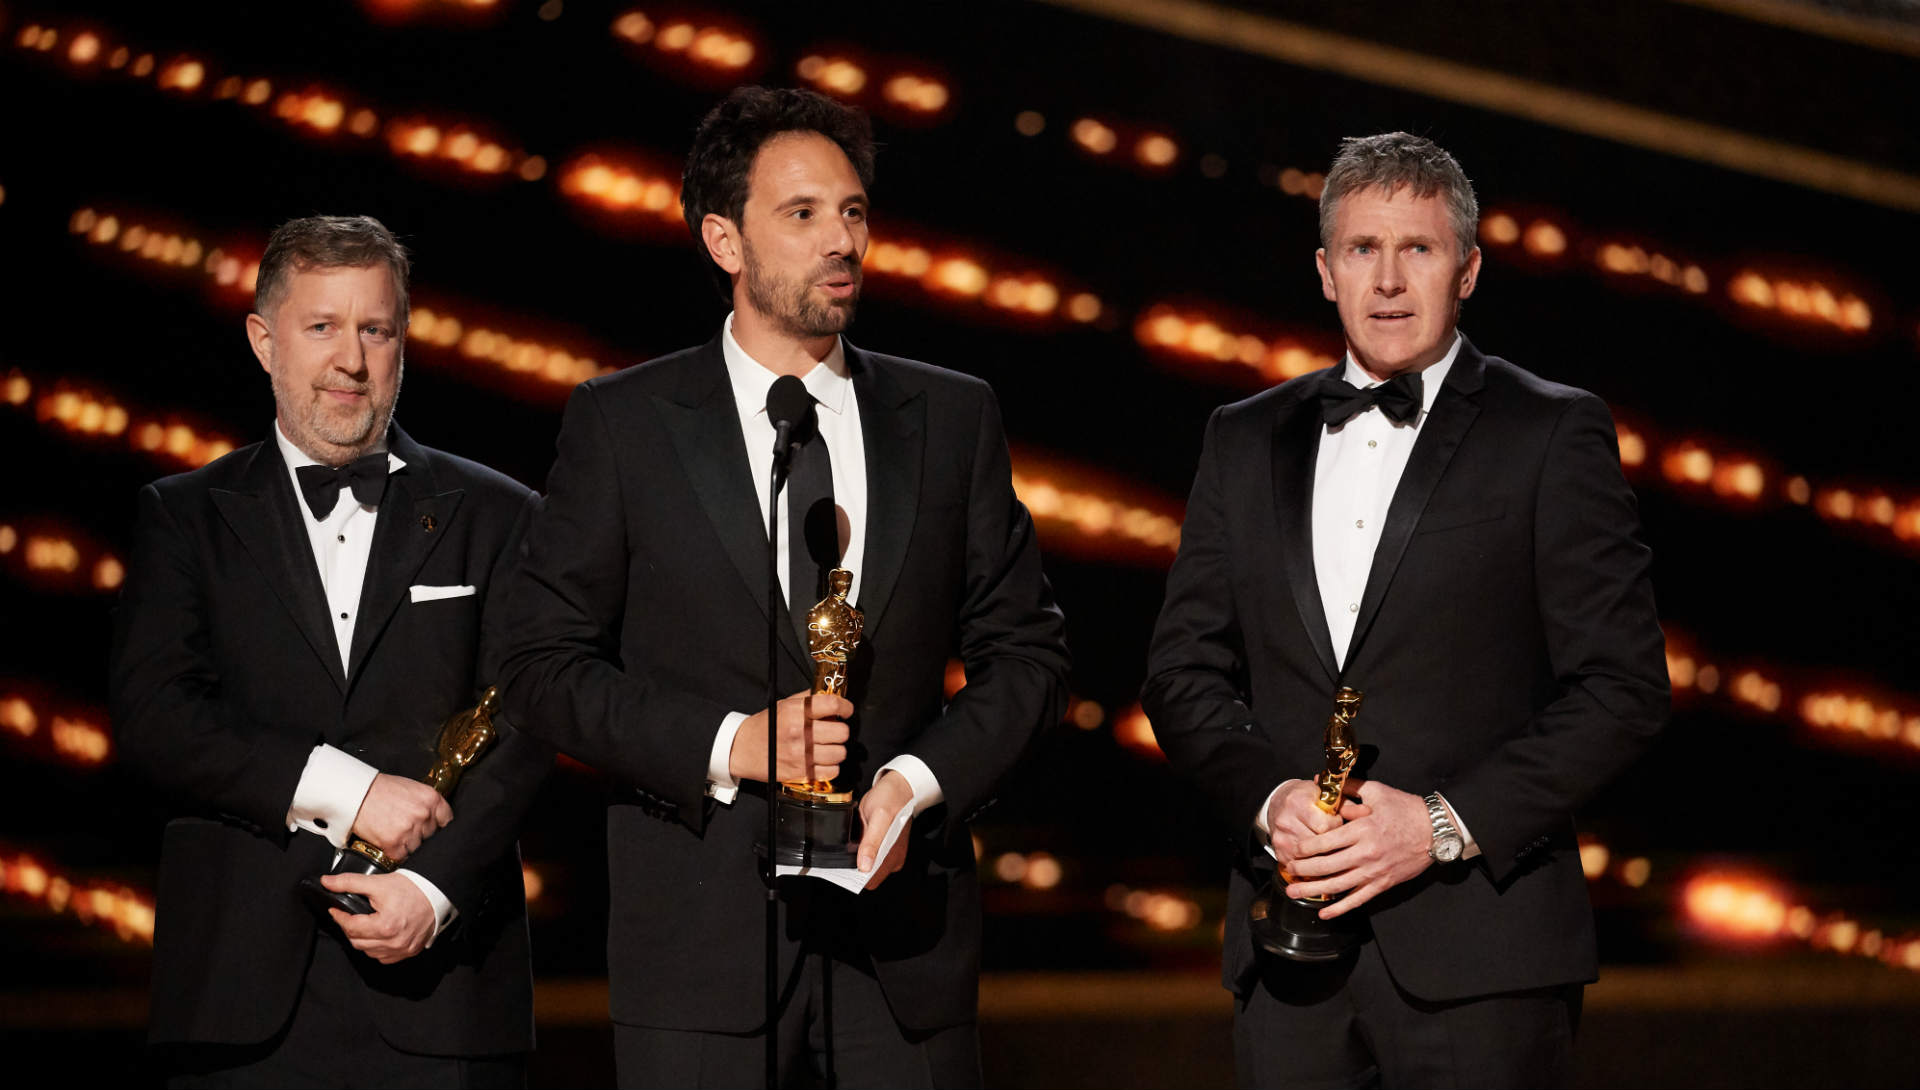 Greg Butler, Guillaume Rocheron, and Dominic Tuohy sur la scène des Oscars 2020 